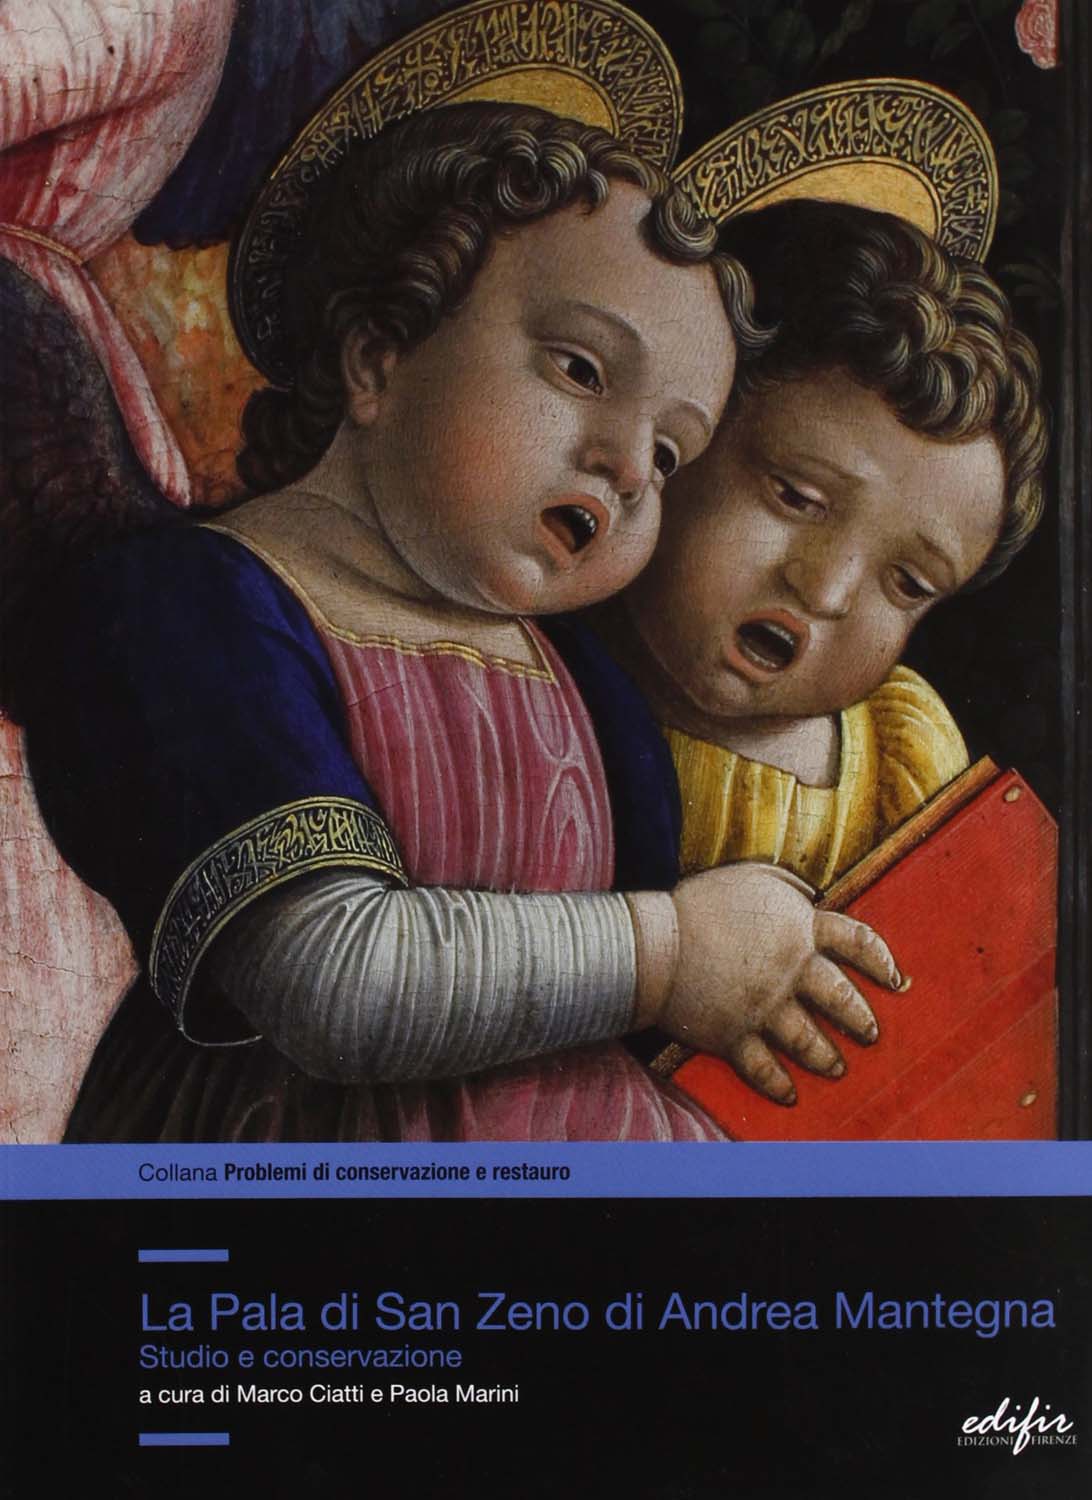 Libri Restauro Della Pala Di San Zeno Di Andrea Mantegna. Studio E Conservazione (Il) NUOVO SIGILLATO, EDIZIONE DEL 05/10/2009 SUBITO DISPONIBILE